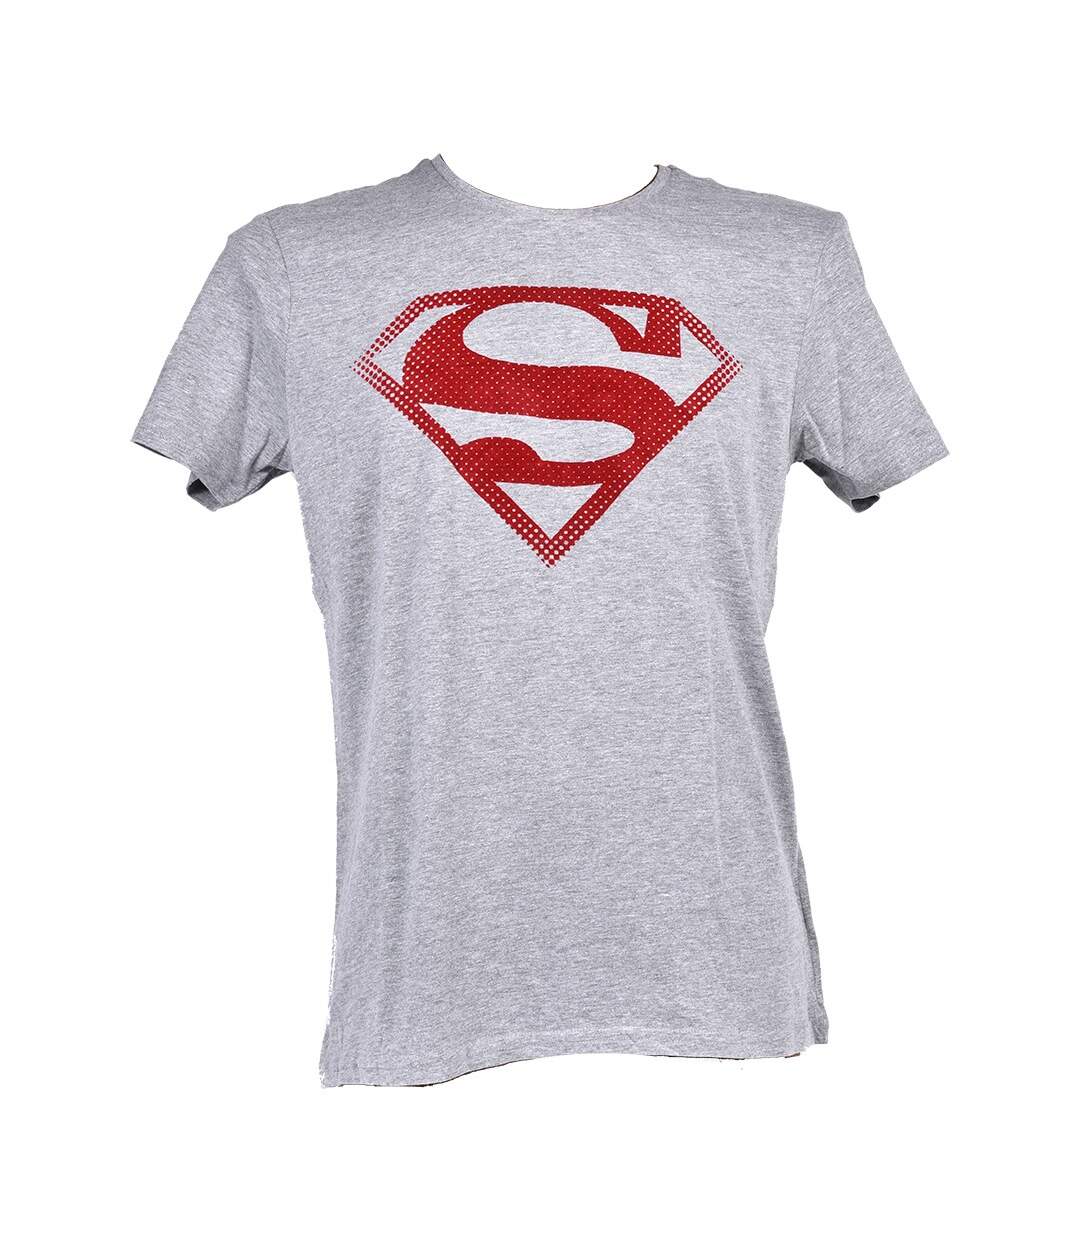 T shirt homme Licence Superhéros: Superman, Batman, Avengers..- Assortiment modèles photos selon arrivages- Er3533 Superman Gris